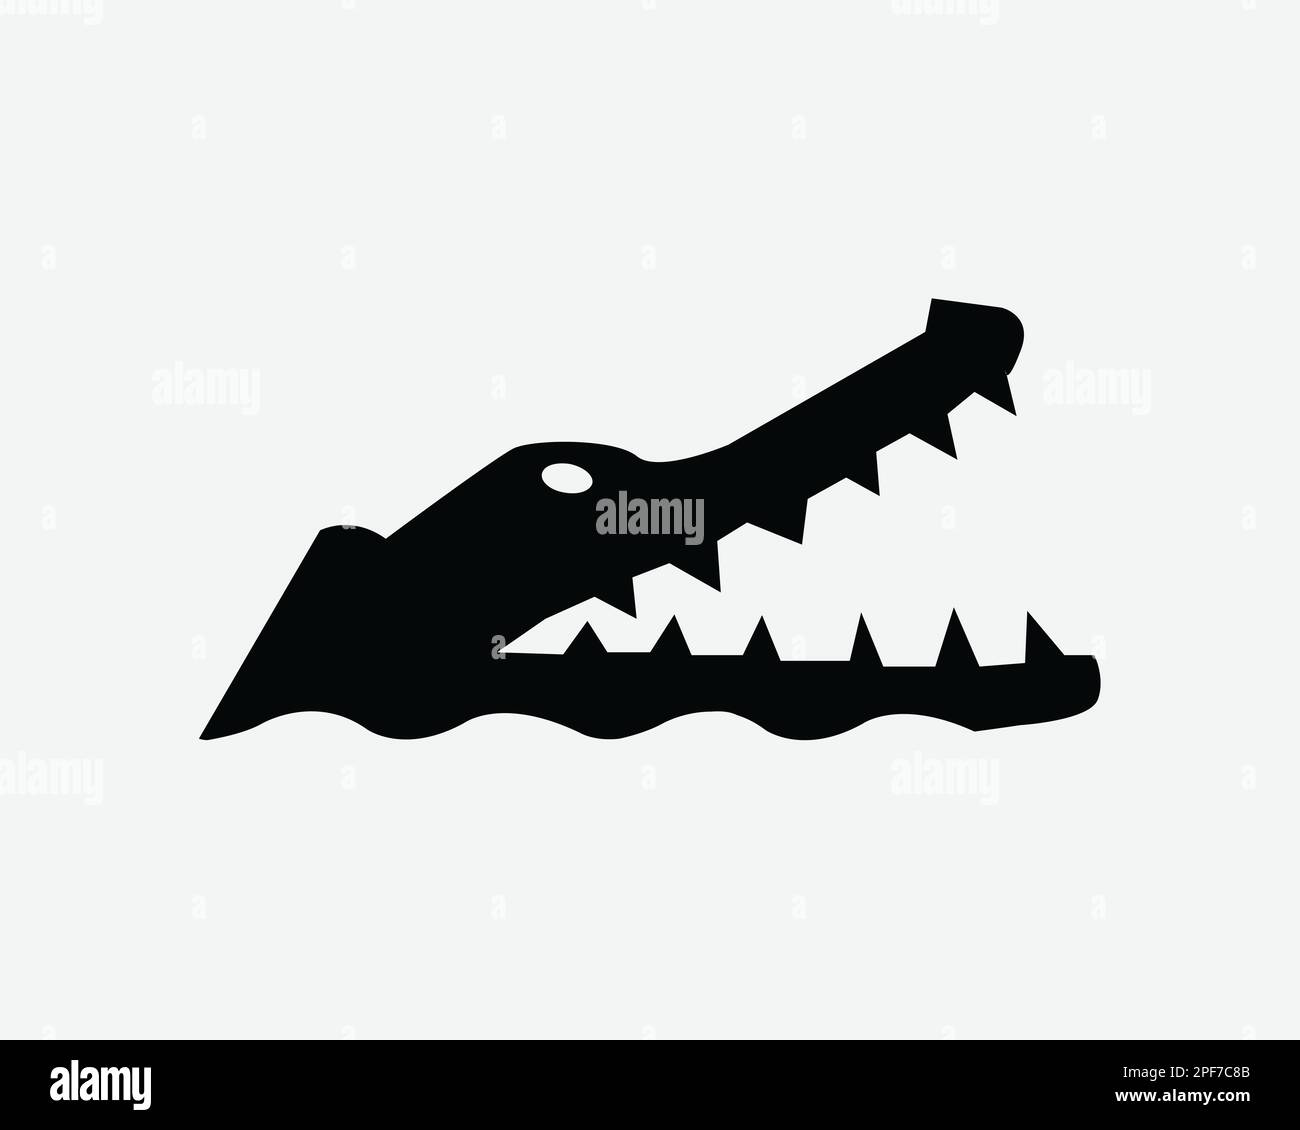 Icona della testa di alligatore Gator Rettile di coccodrillo a bocca aperta Jaw Vector Black White Silhouette simbolo segno grafico clipart illustrazione pittogramma Illustrazione Vettoriale